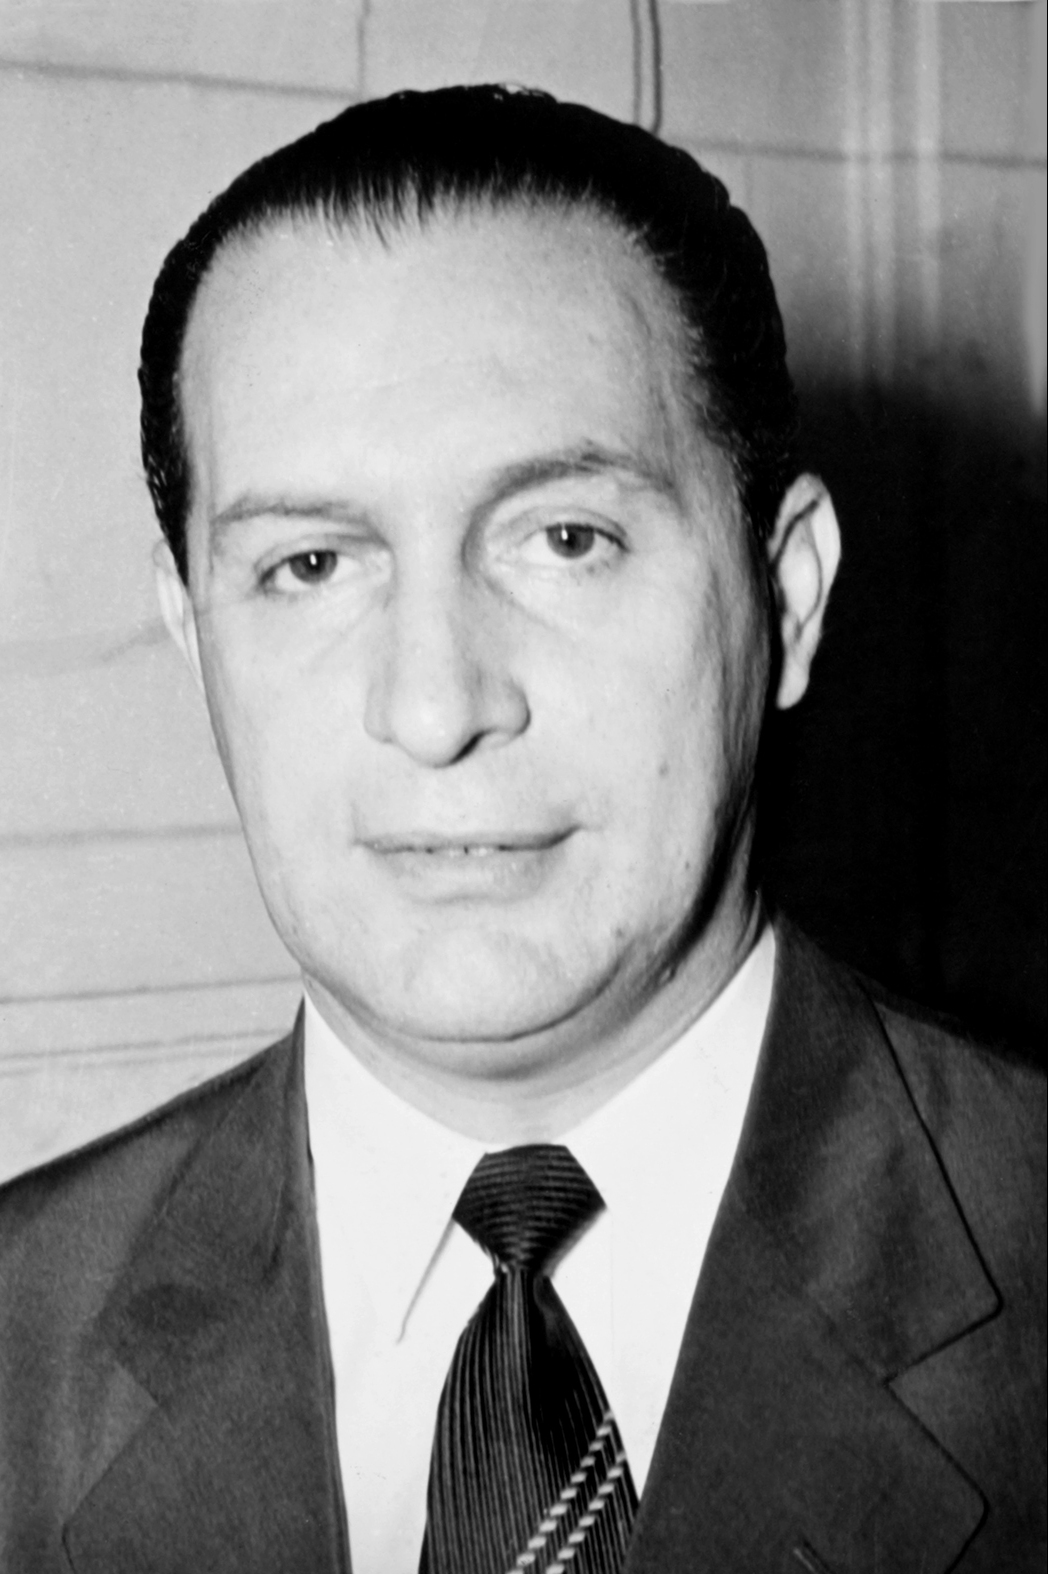 Deputado Paschoal Ranieri Mazzilli, Presidente da Câmara dos Deputados assume interinamente a Presidência da República em 02 de abril de 1964. Governa por 14 dias.